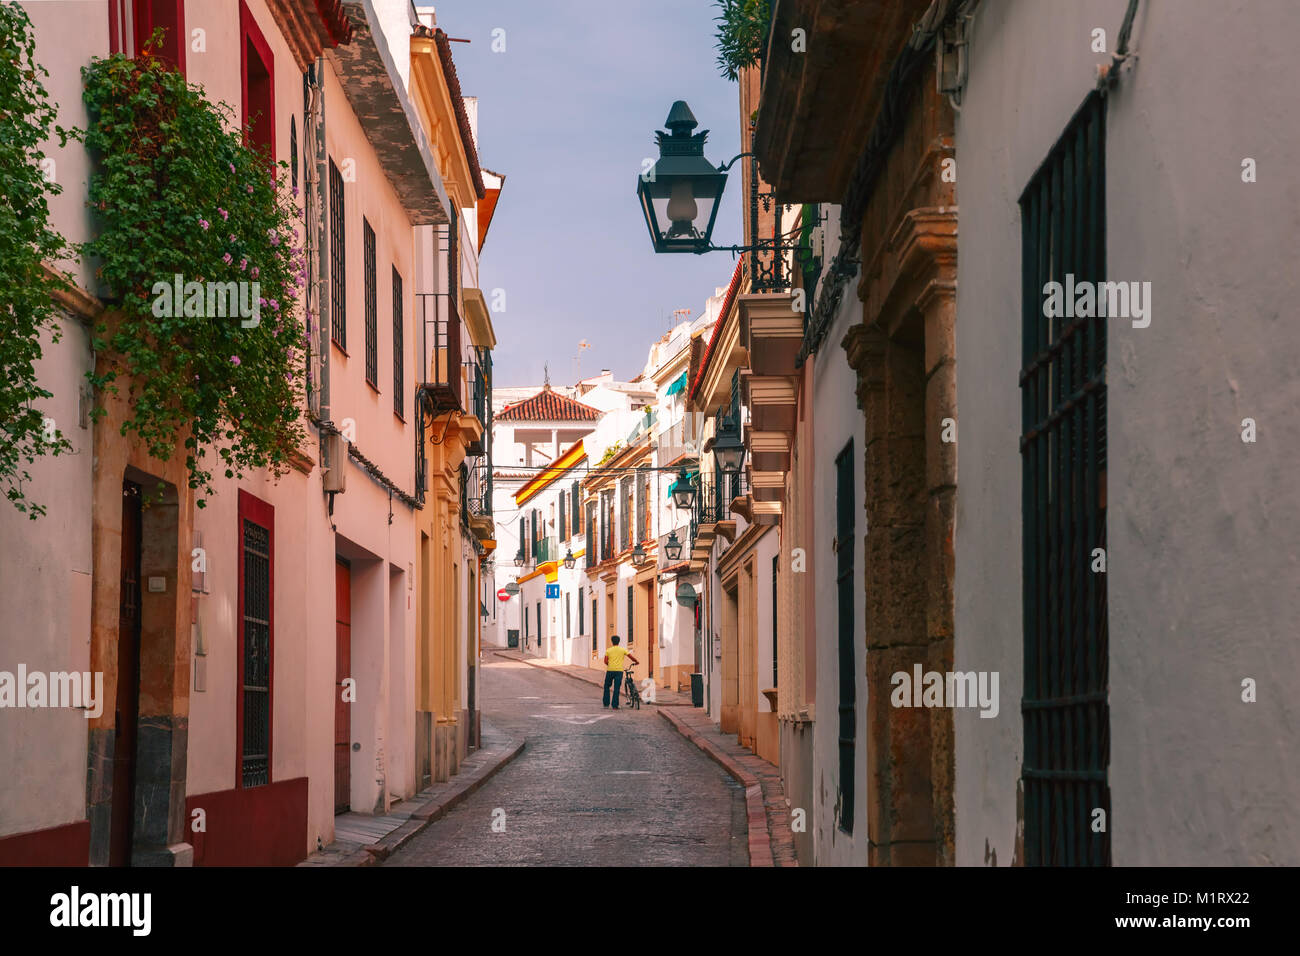 The sunny street in Cordoba, Spain Stock Photo